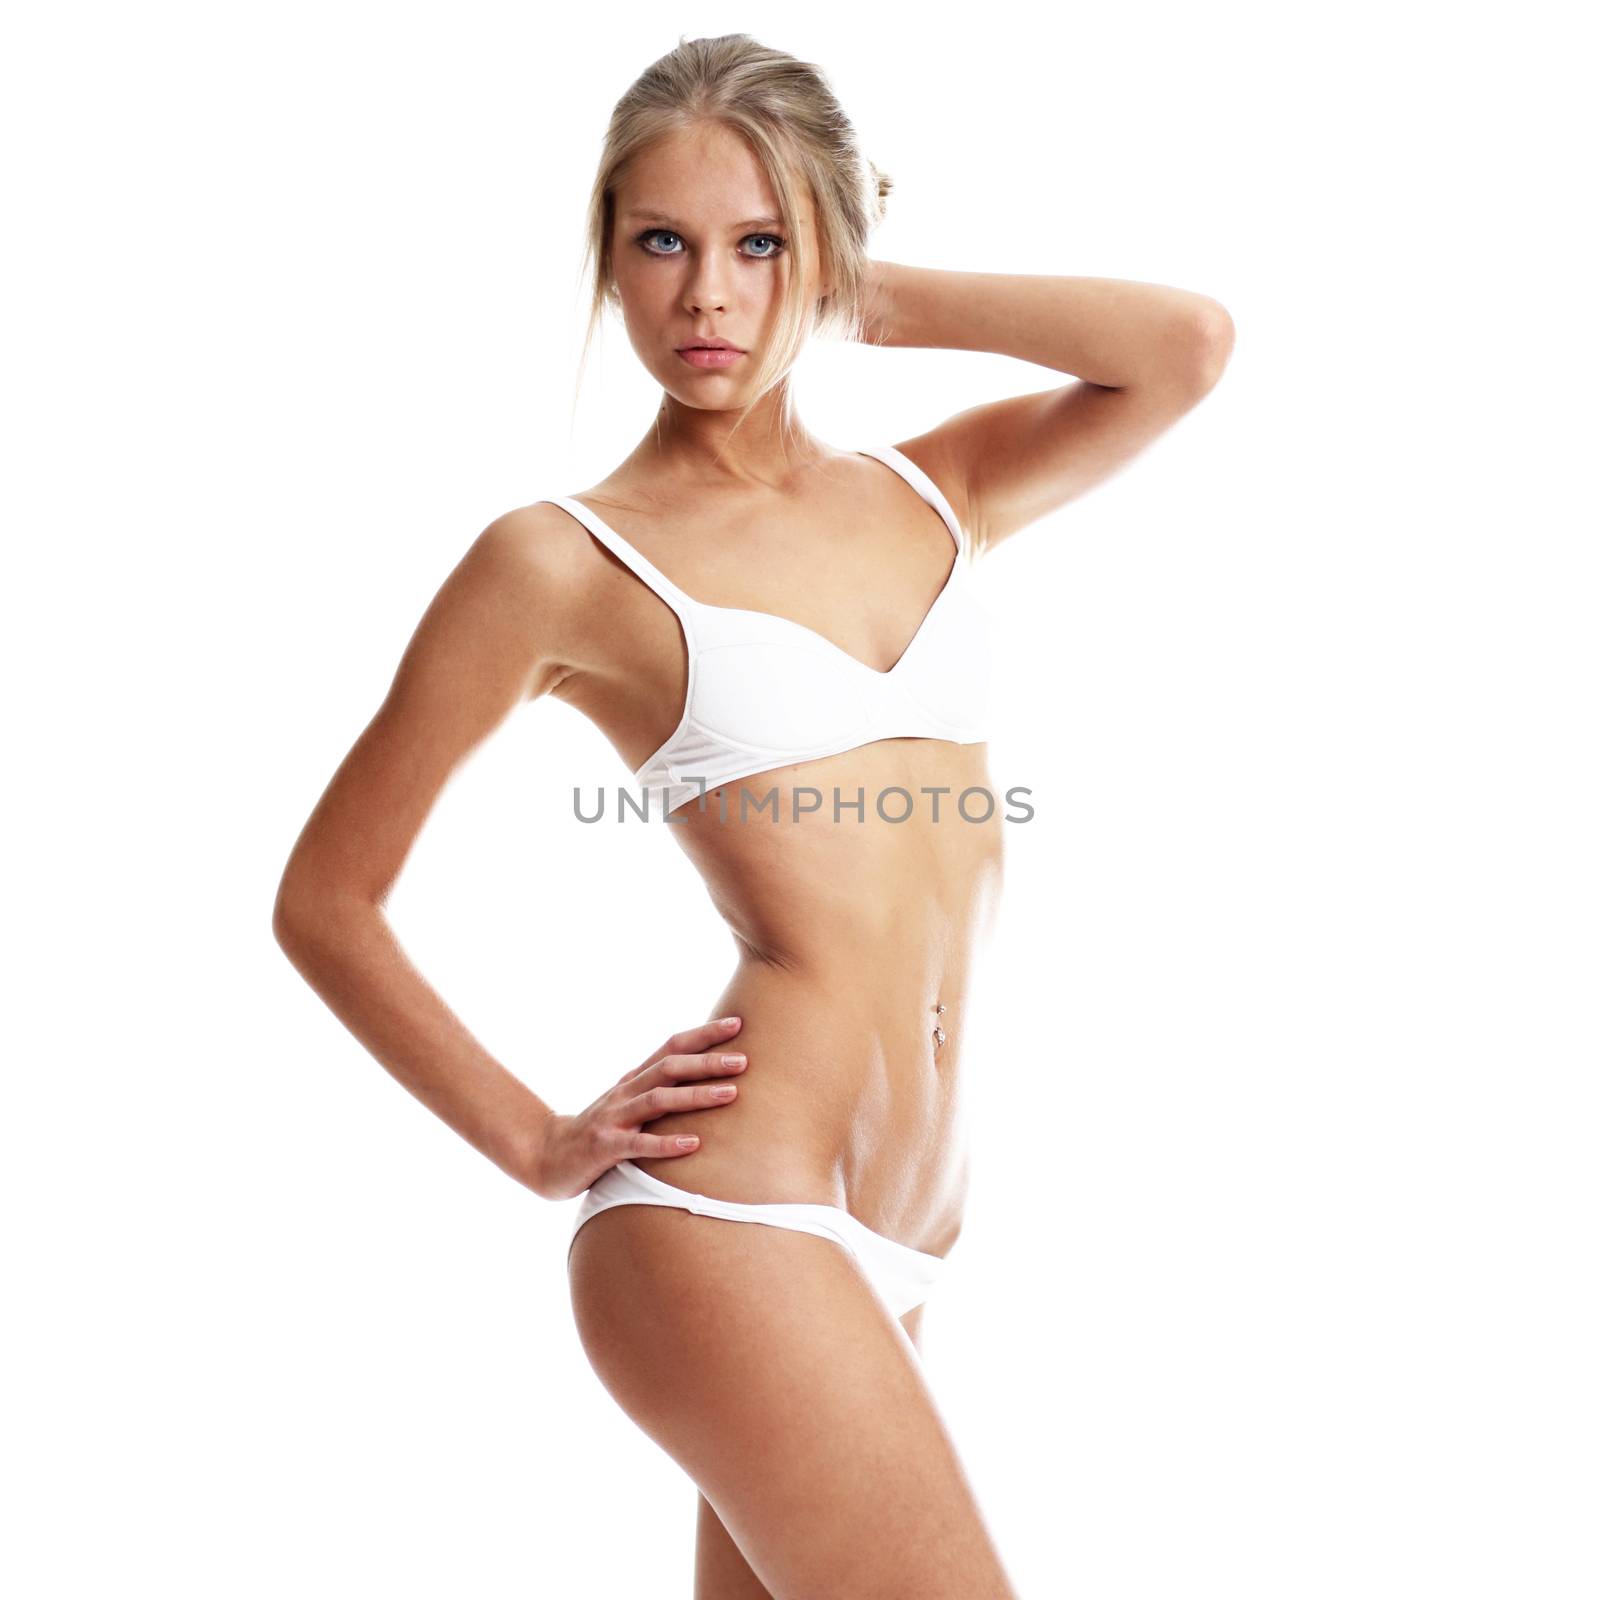 Sexy underwear model